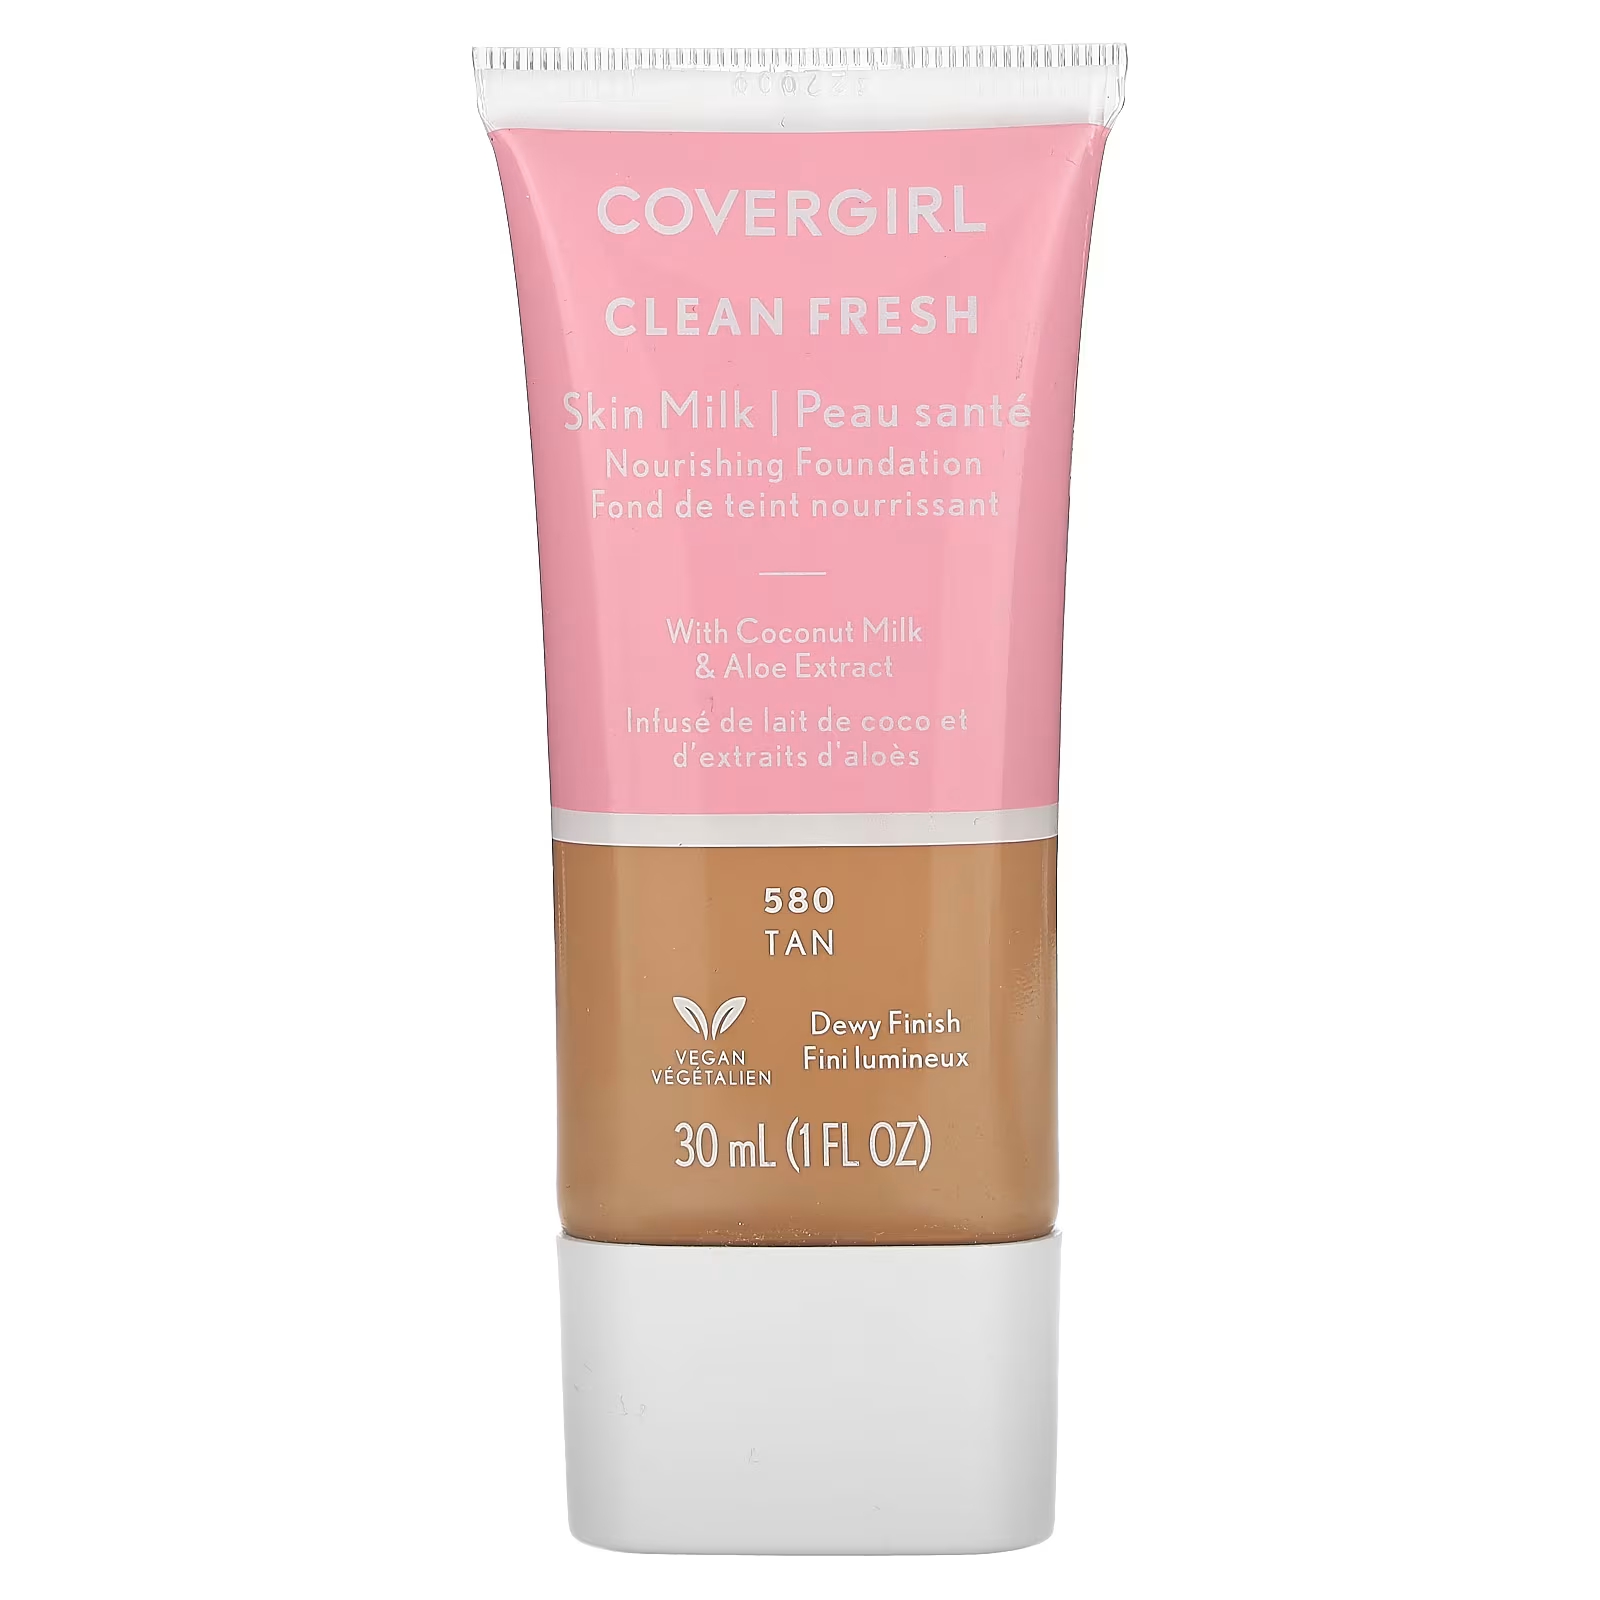 Тональная основа Covergirl CLean Fresh Skin 580 Tan, 30 мл